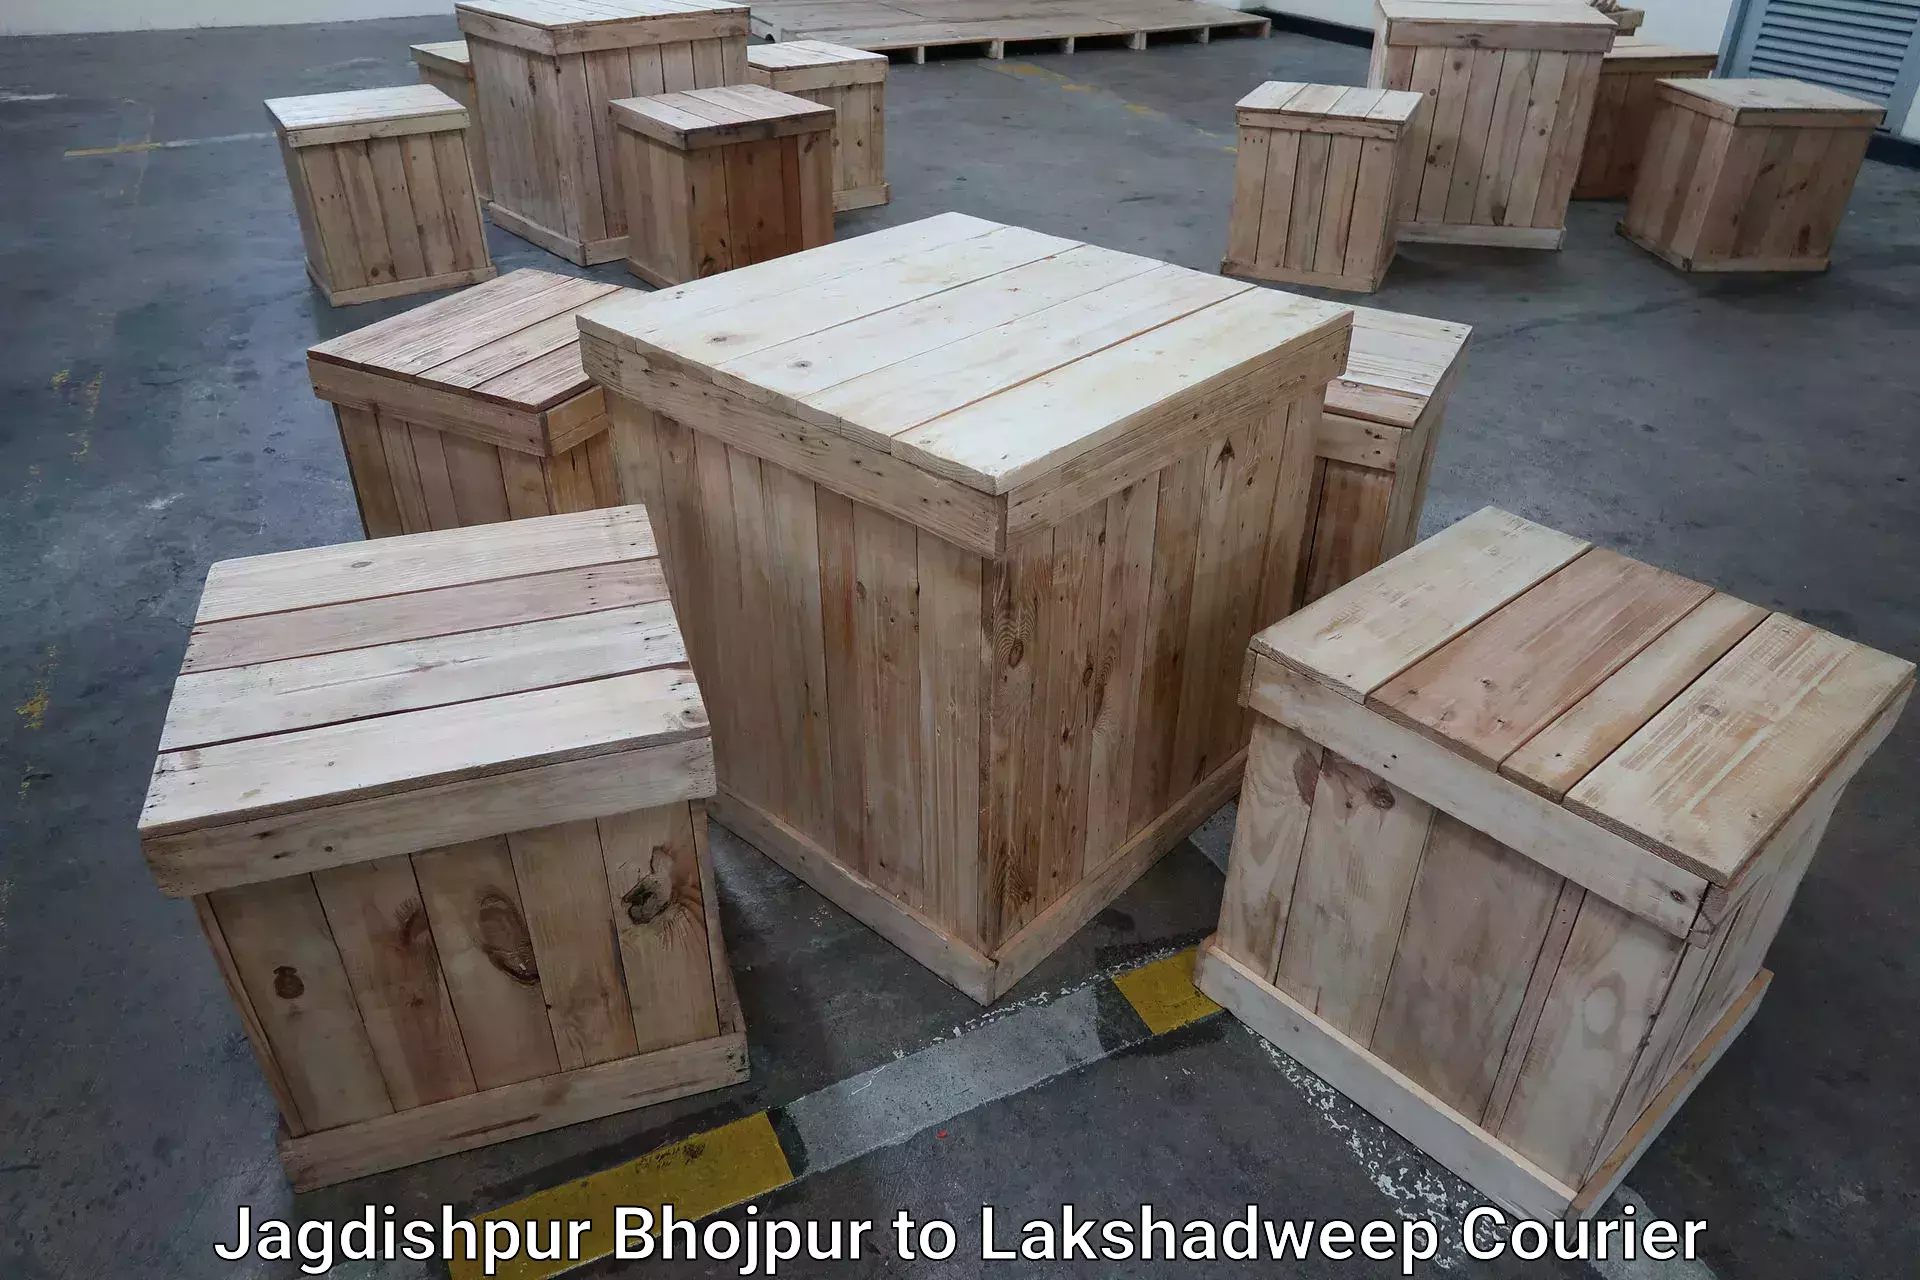 Baggage delivery solutions Jagdishpur Bhojpur to Lakshadweep